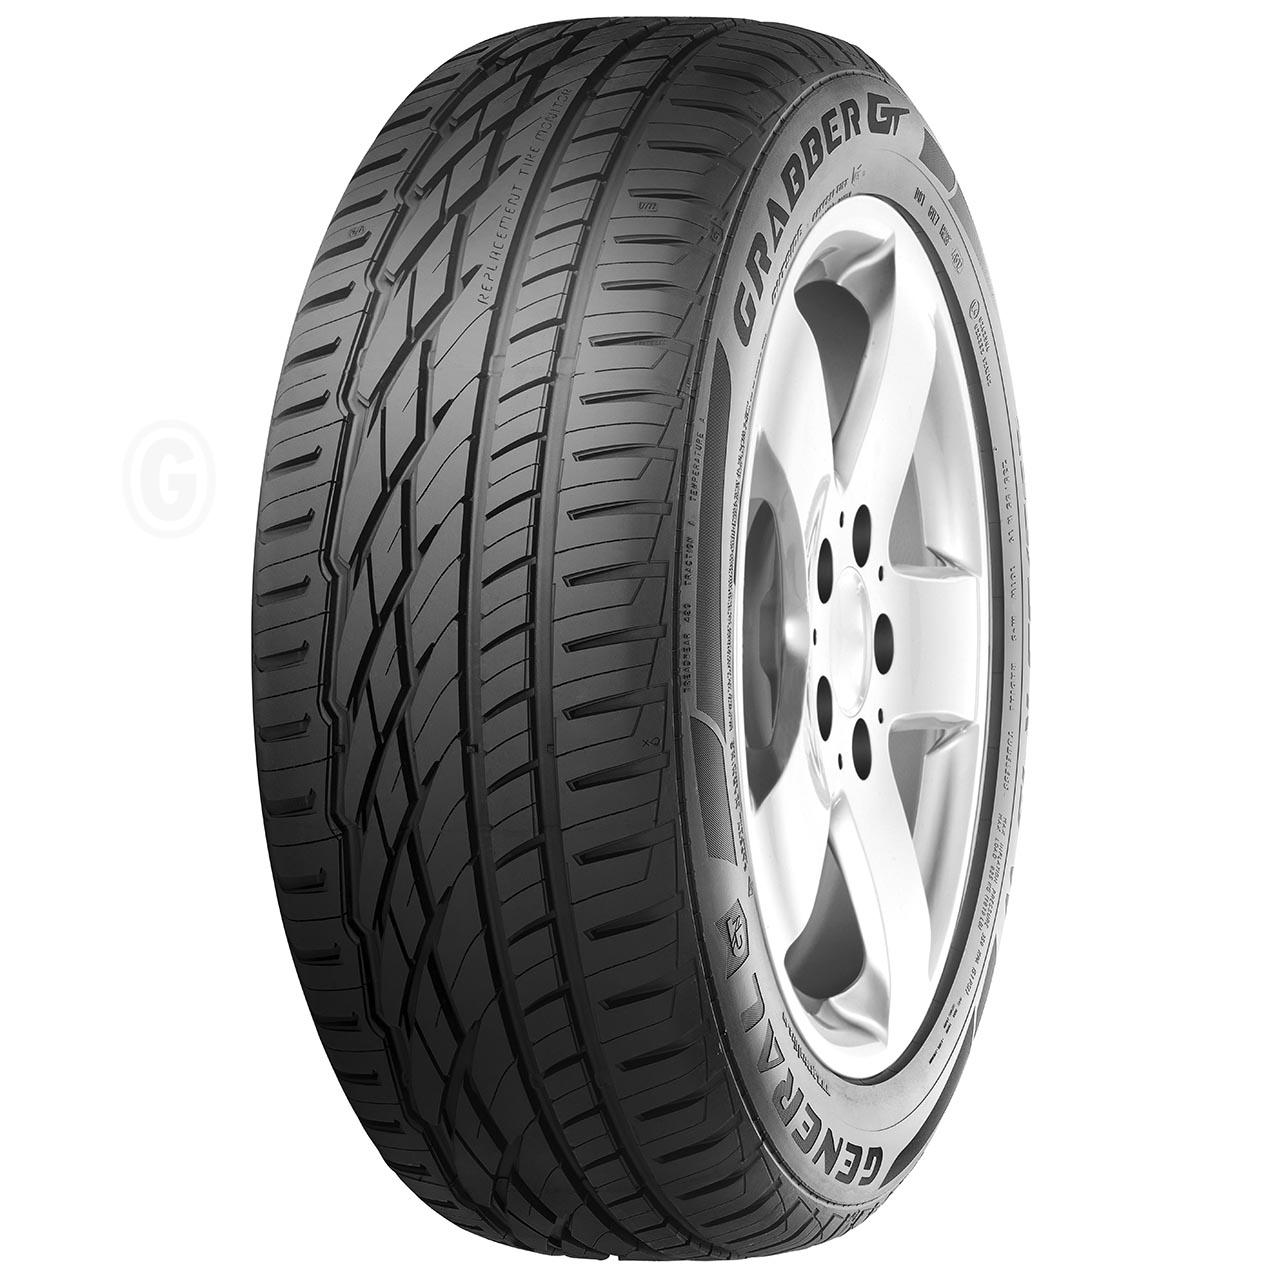 General Tire Grabber GT 255/70R16 111H FR